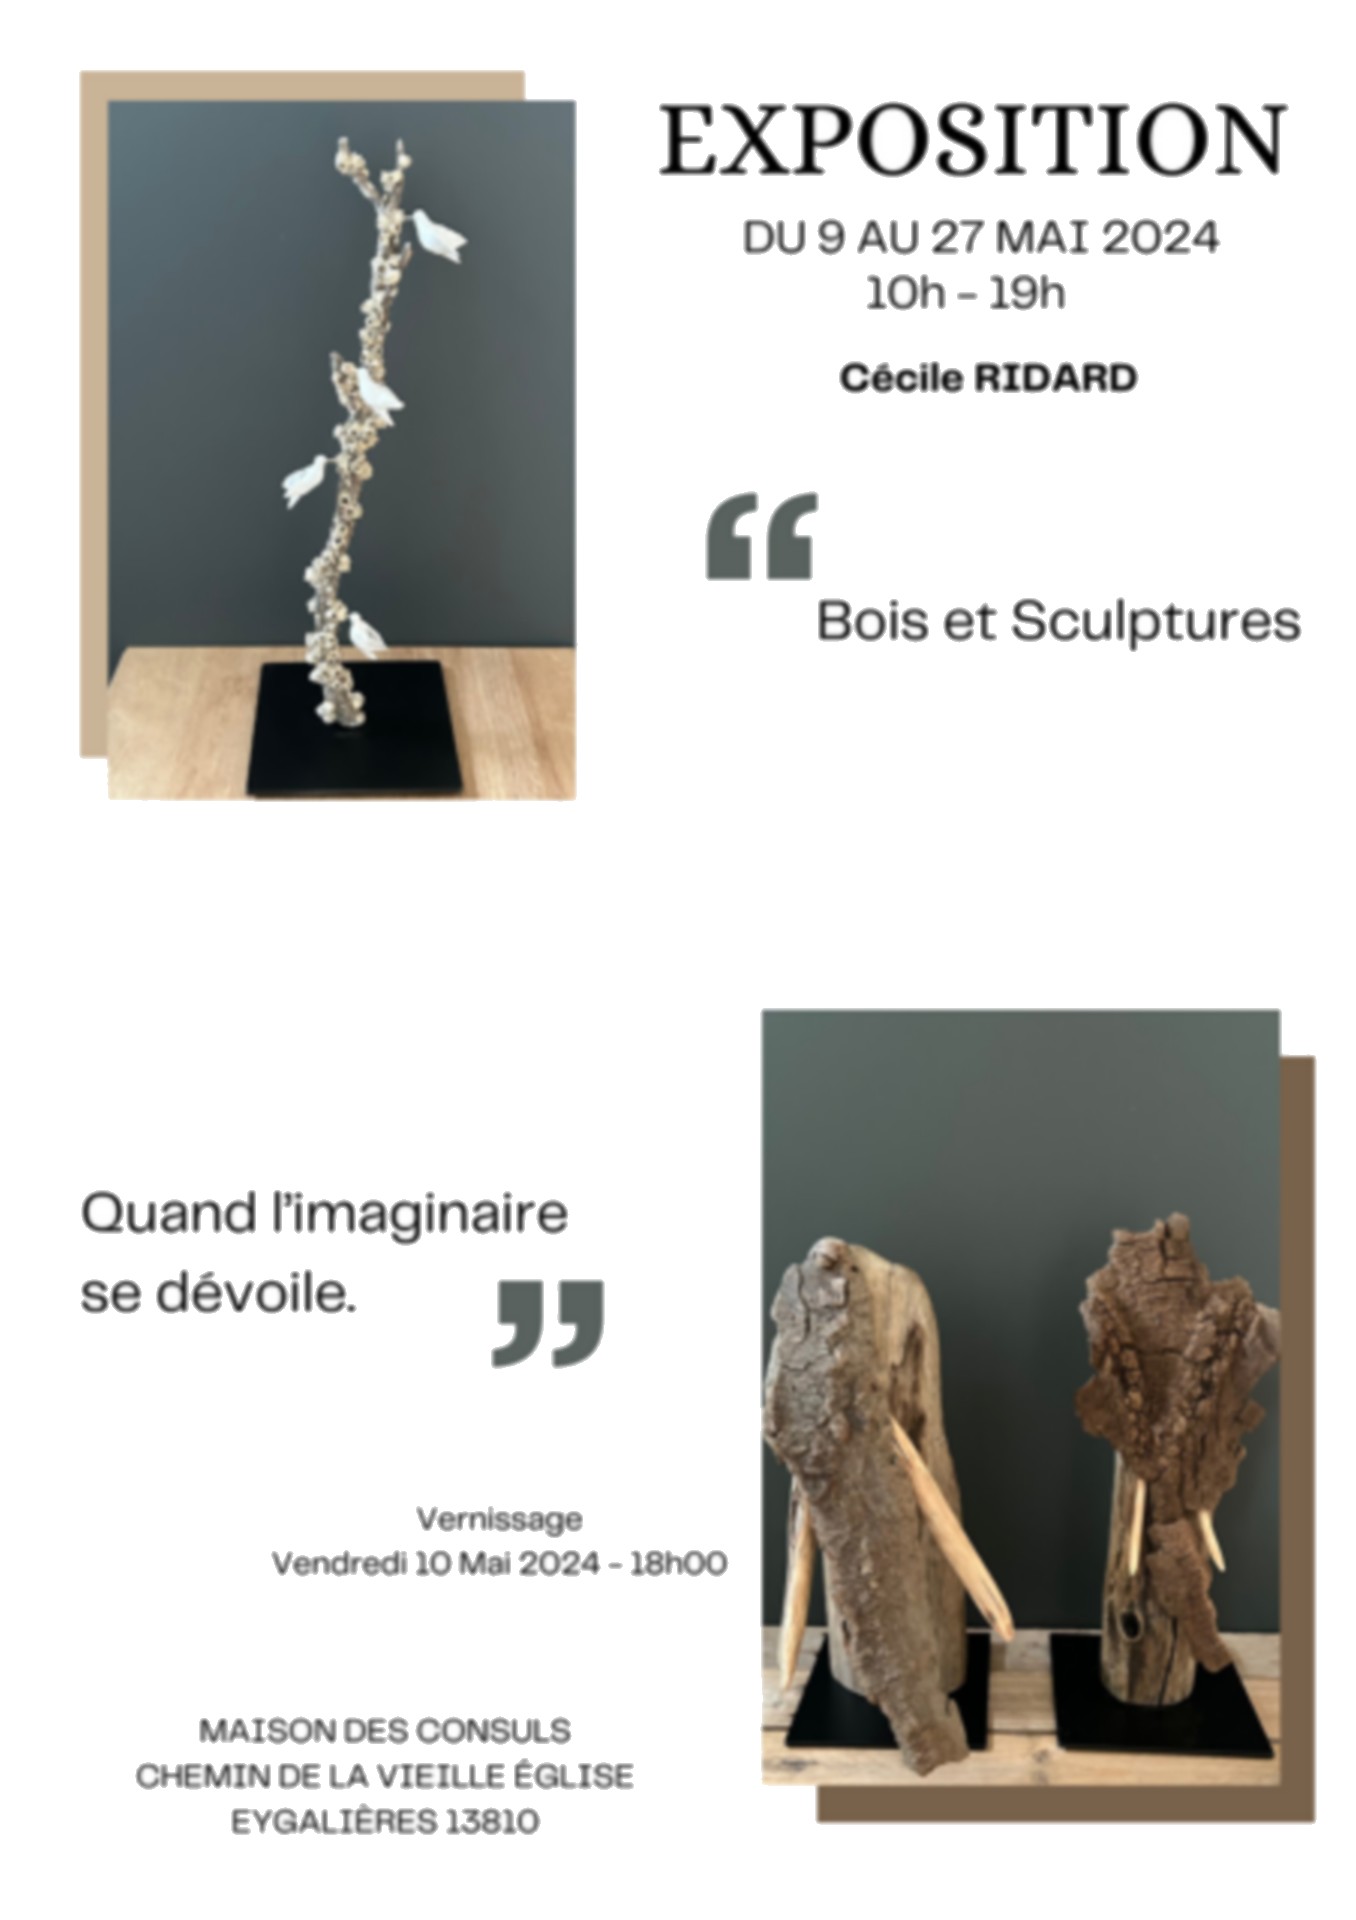 Exposition Cécile Ridard - Bois et Sculptures